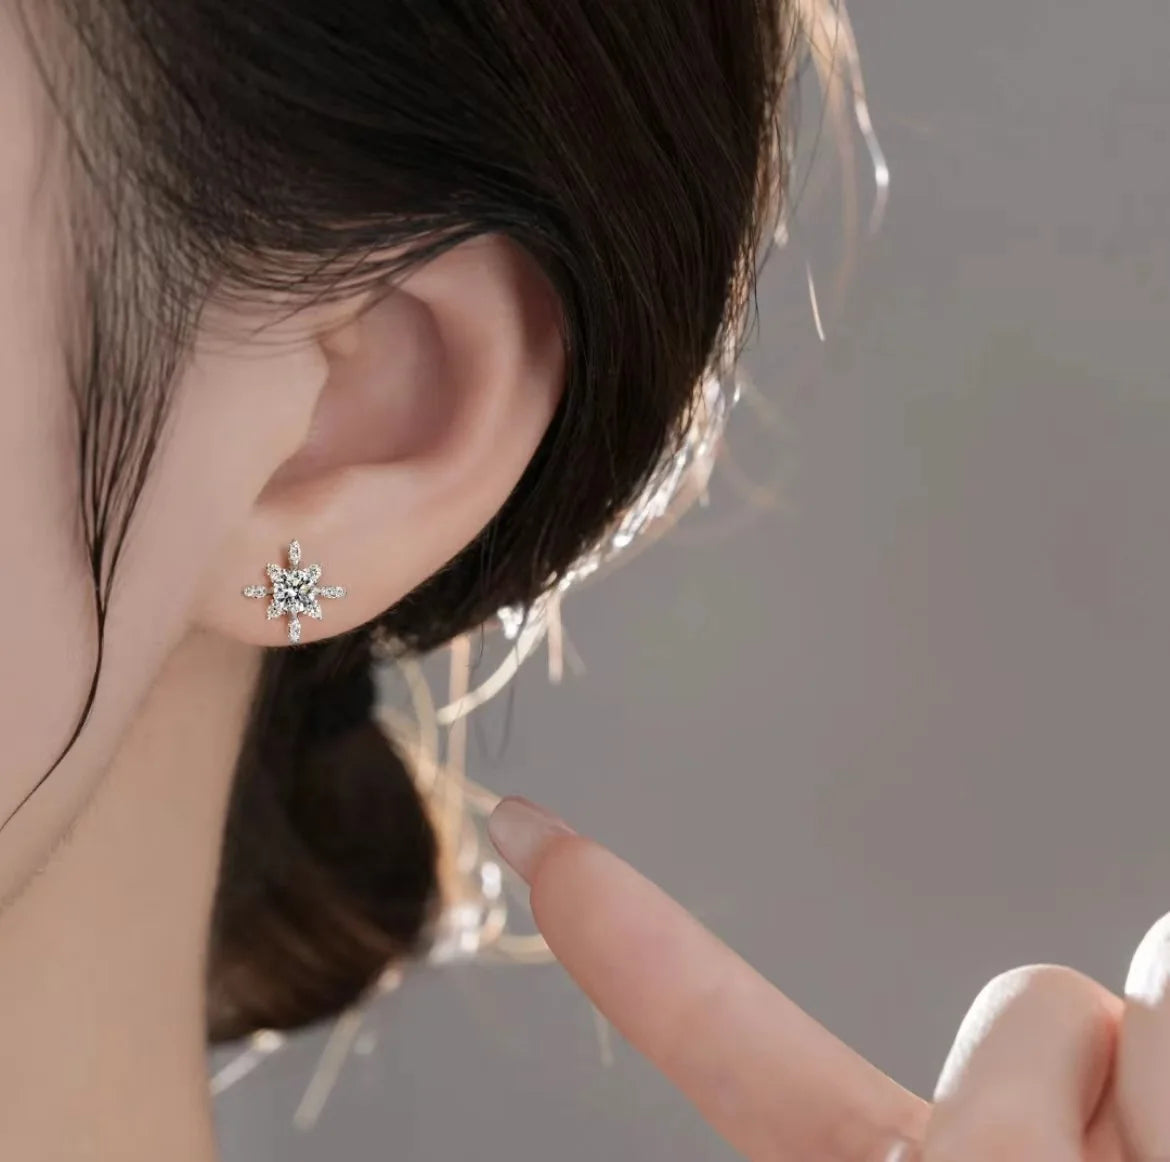 Queen Diamond Ear Earrings